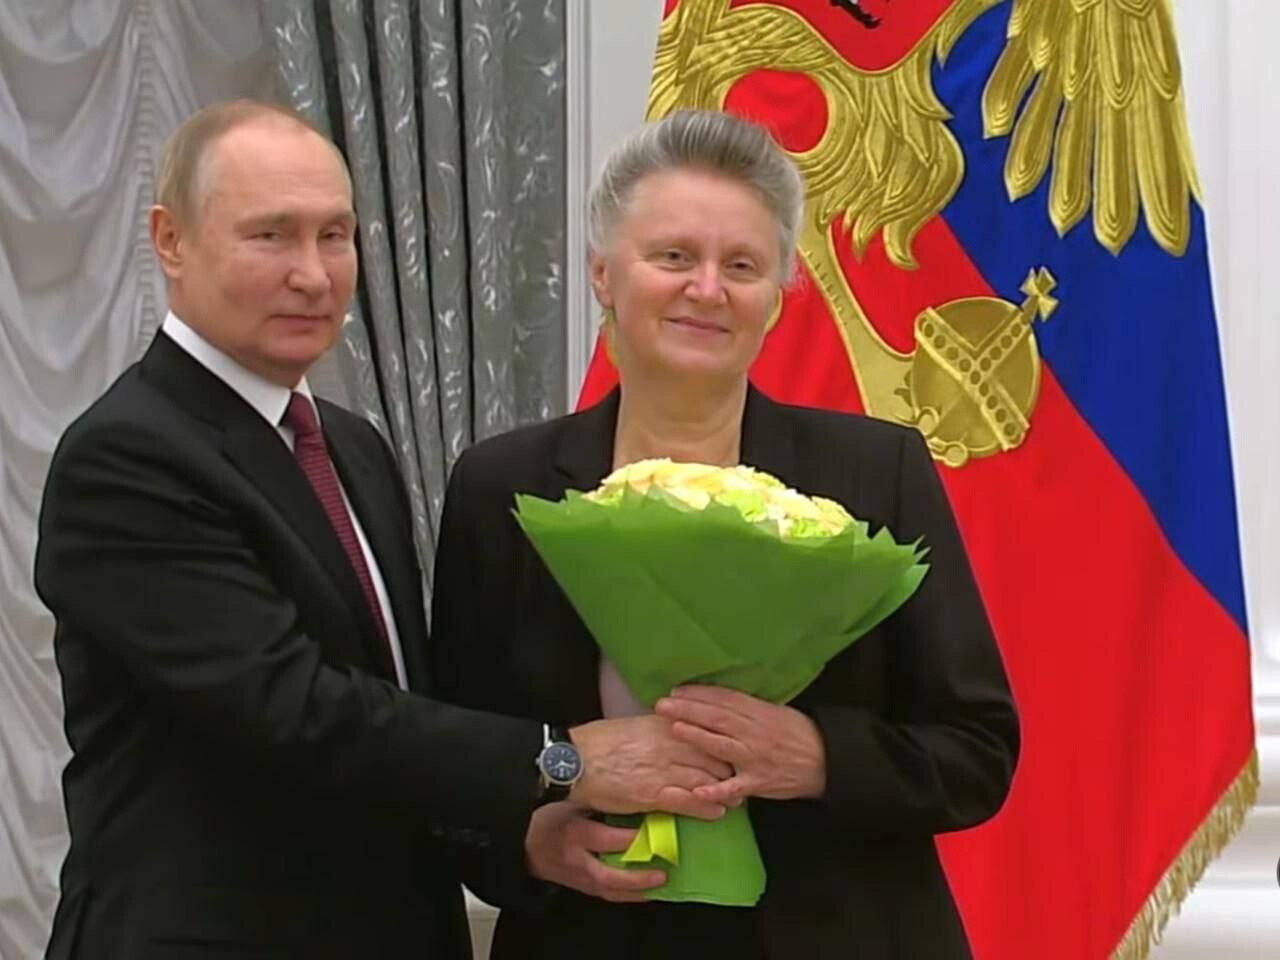 Владимир Путин поздравил жительницу Дрезны с присвоением ей звания «Мать-героиня»